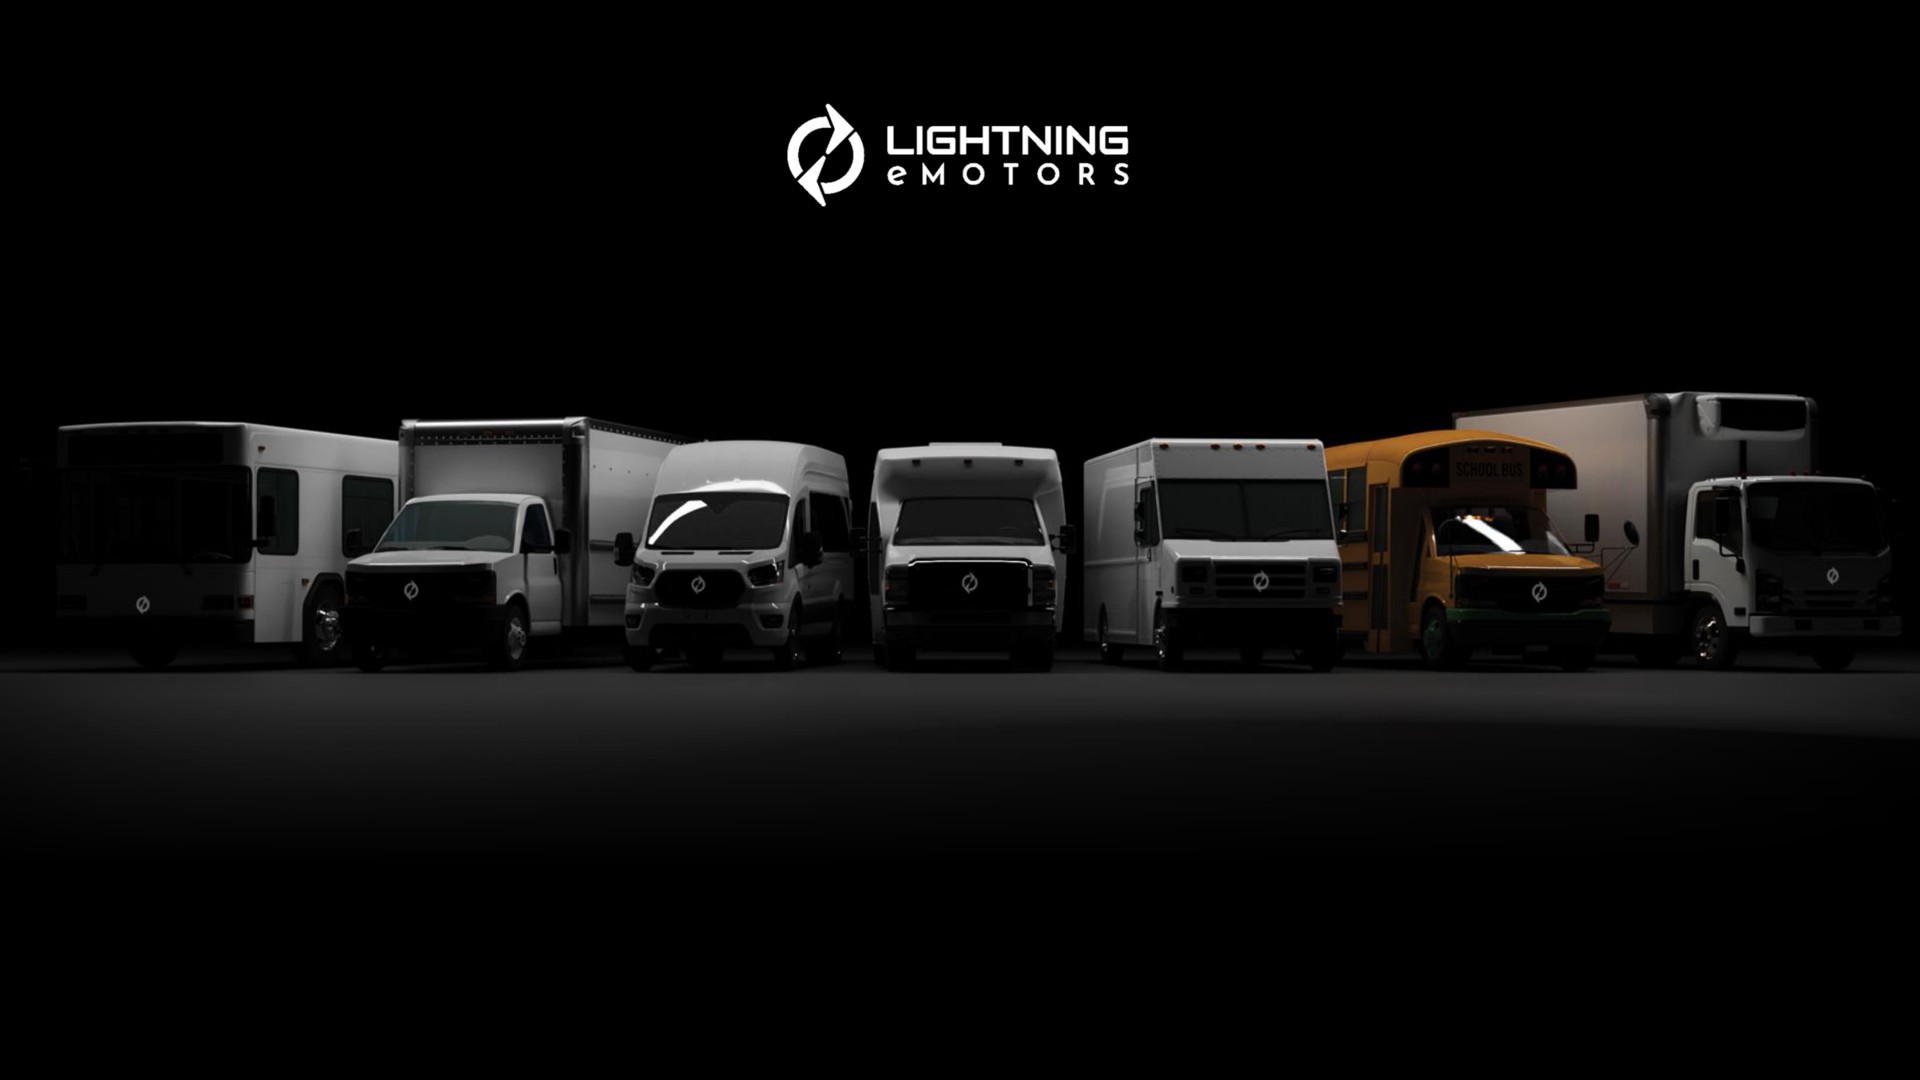  | Lightning eMotors